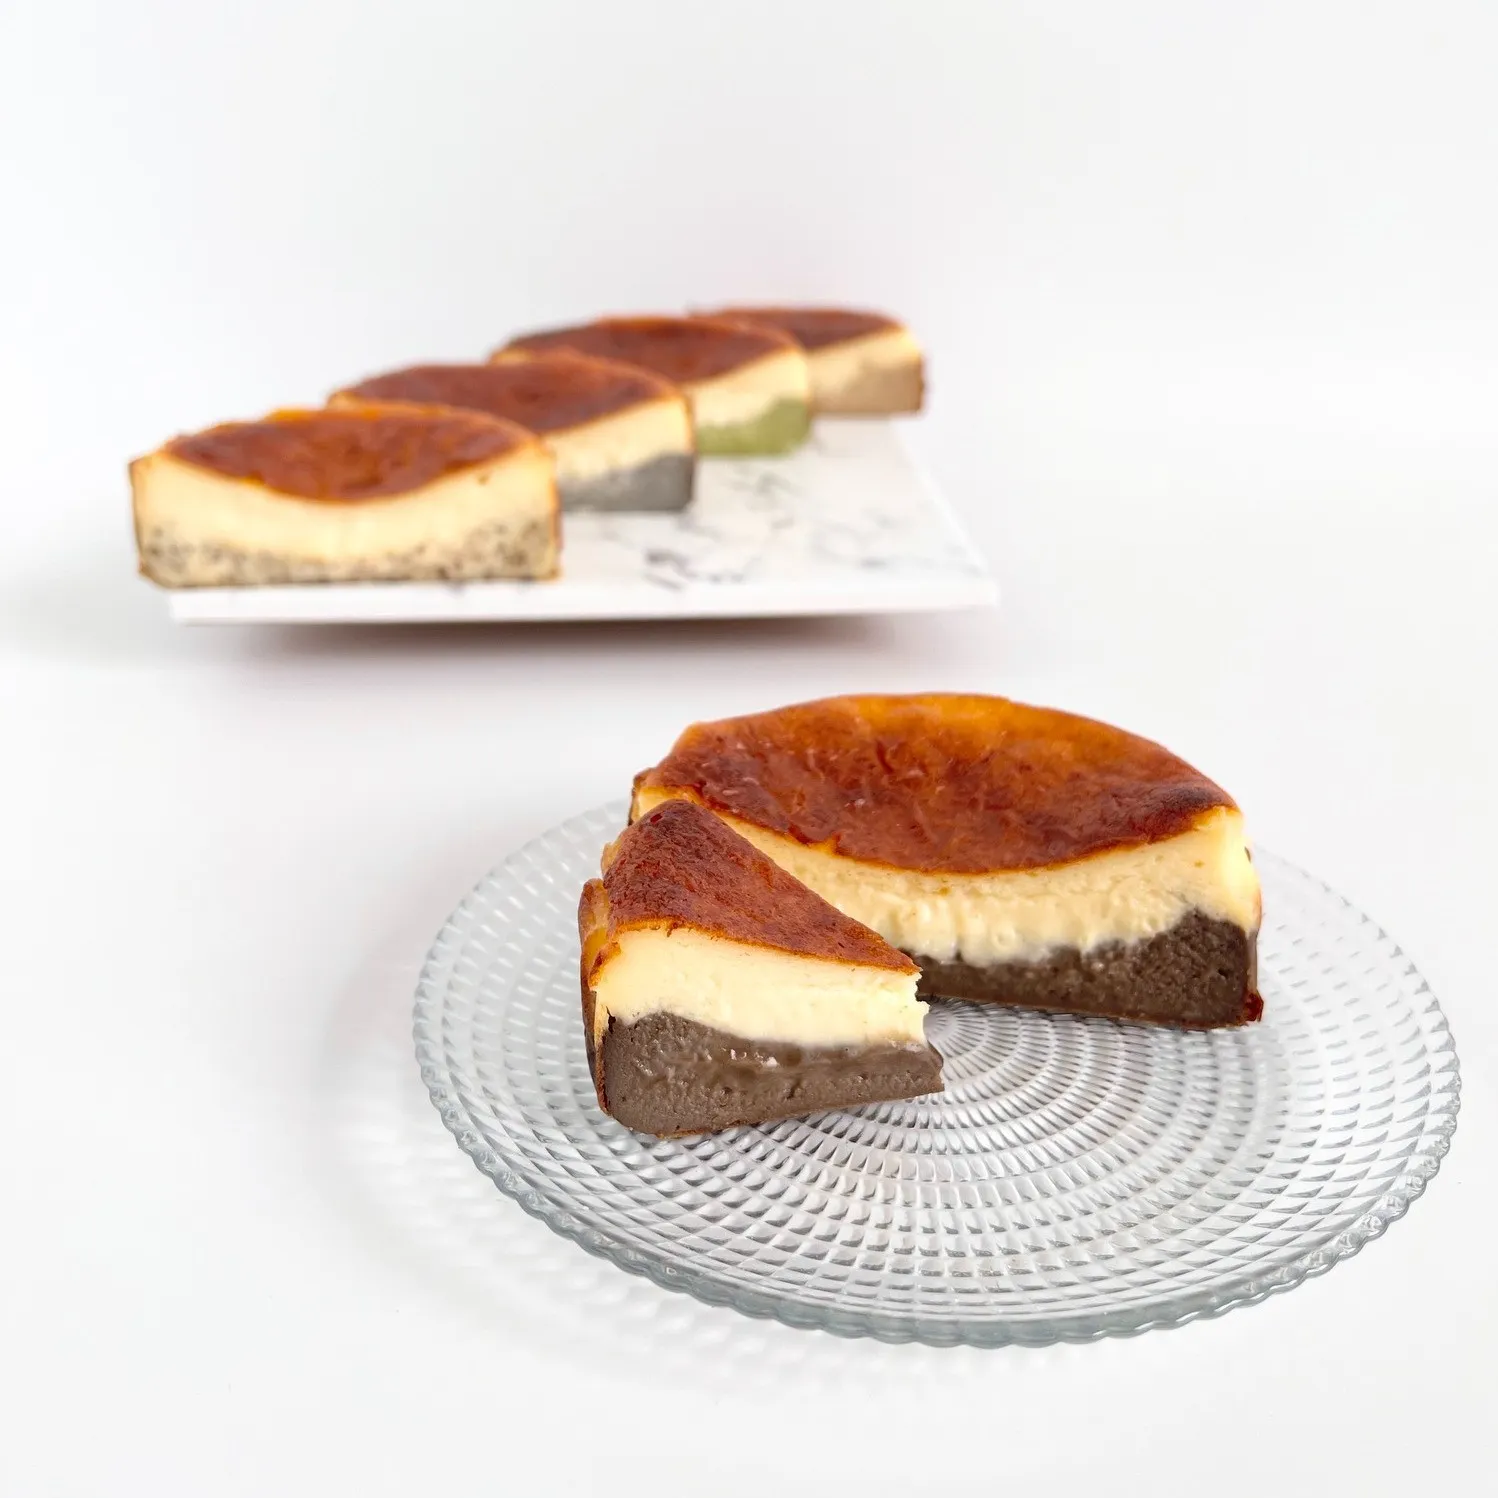 【砂糖・小麦粉不使用】名古屋発とろけるバスクチーズケーキ